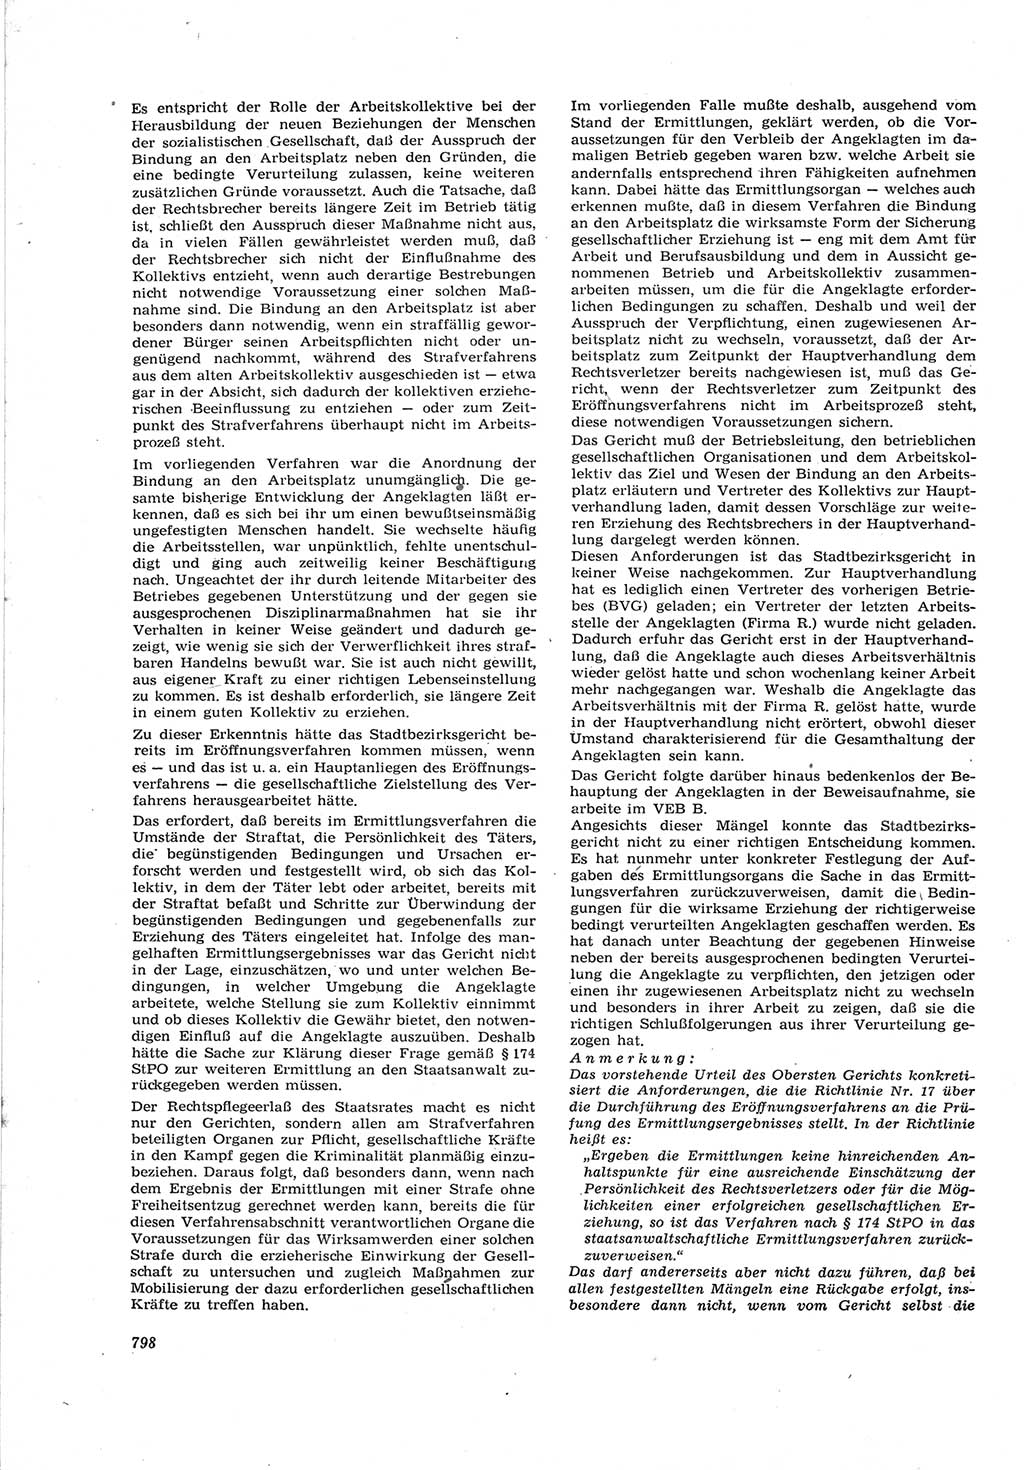 Neue Justiz (NJ), Zeitschrift für Recht und Rechtswissenschaft [Deutsche Demokratische Republik (DDR)], 17. Jahrgang 1963, Seite 798 (NJ DDR 1963, S. 798)